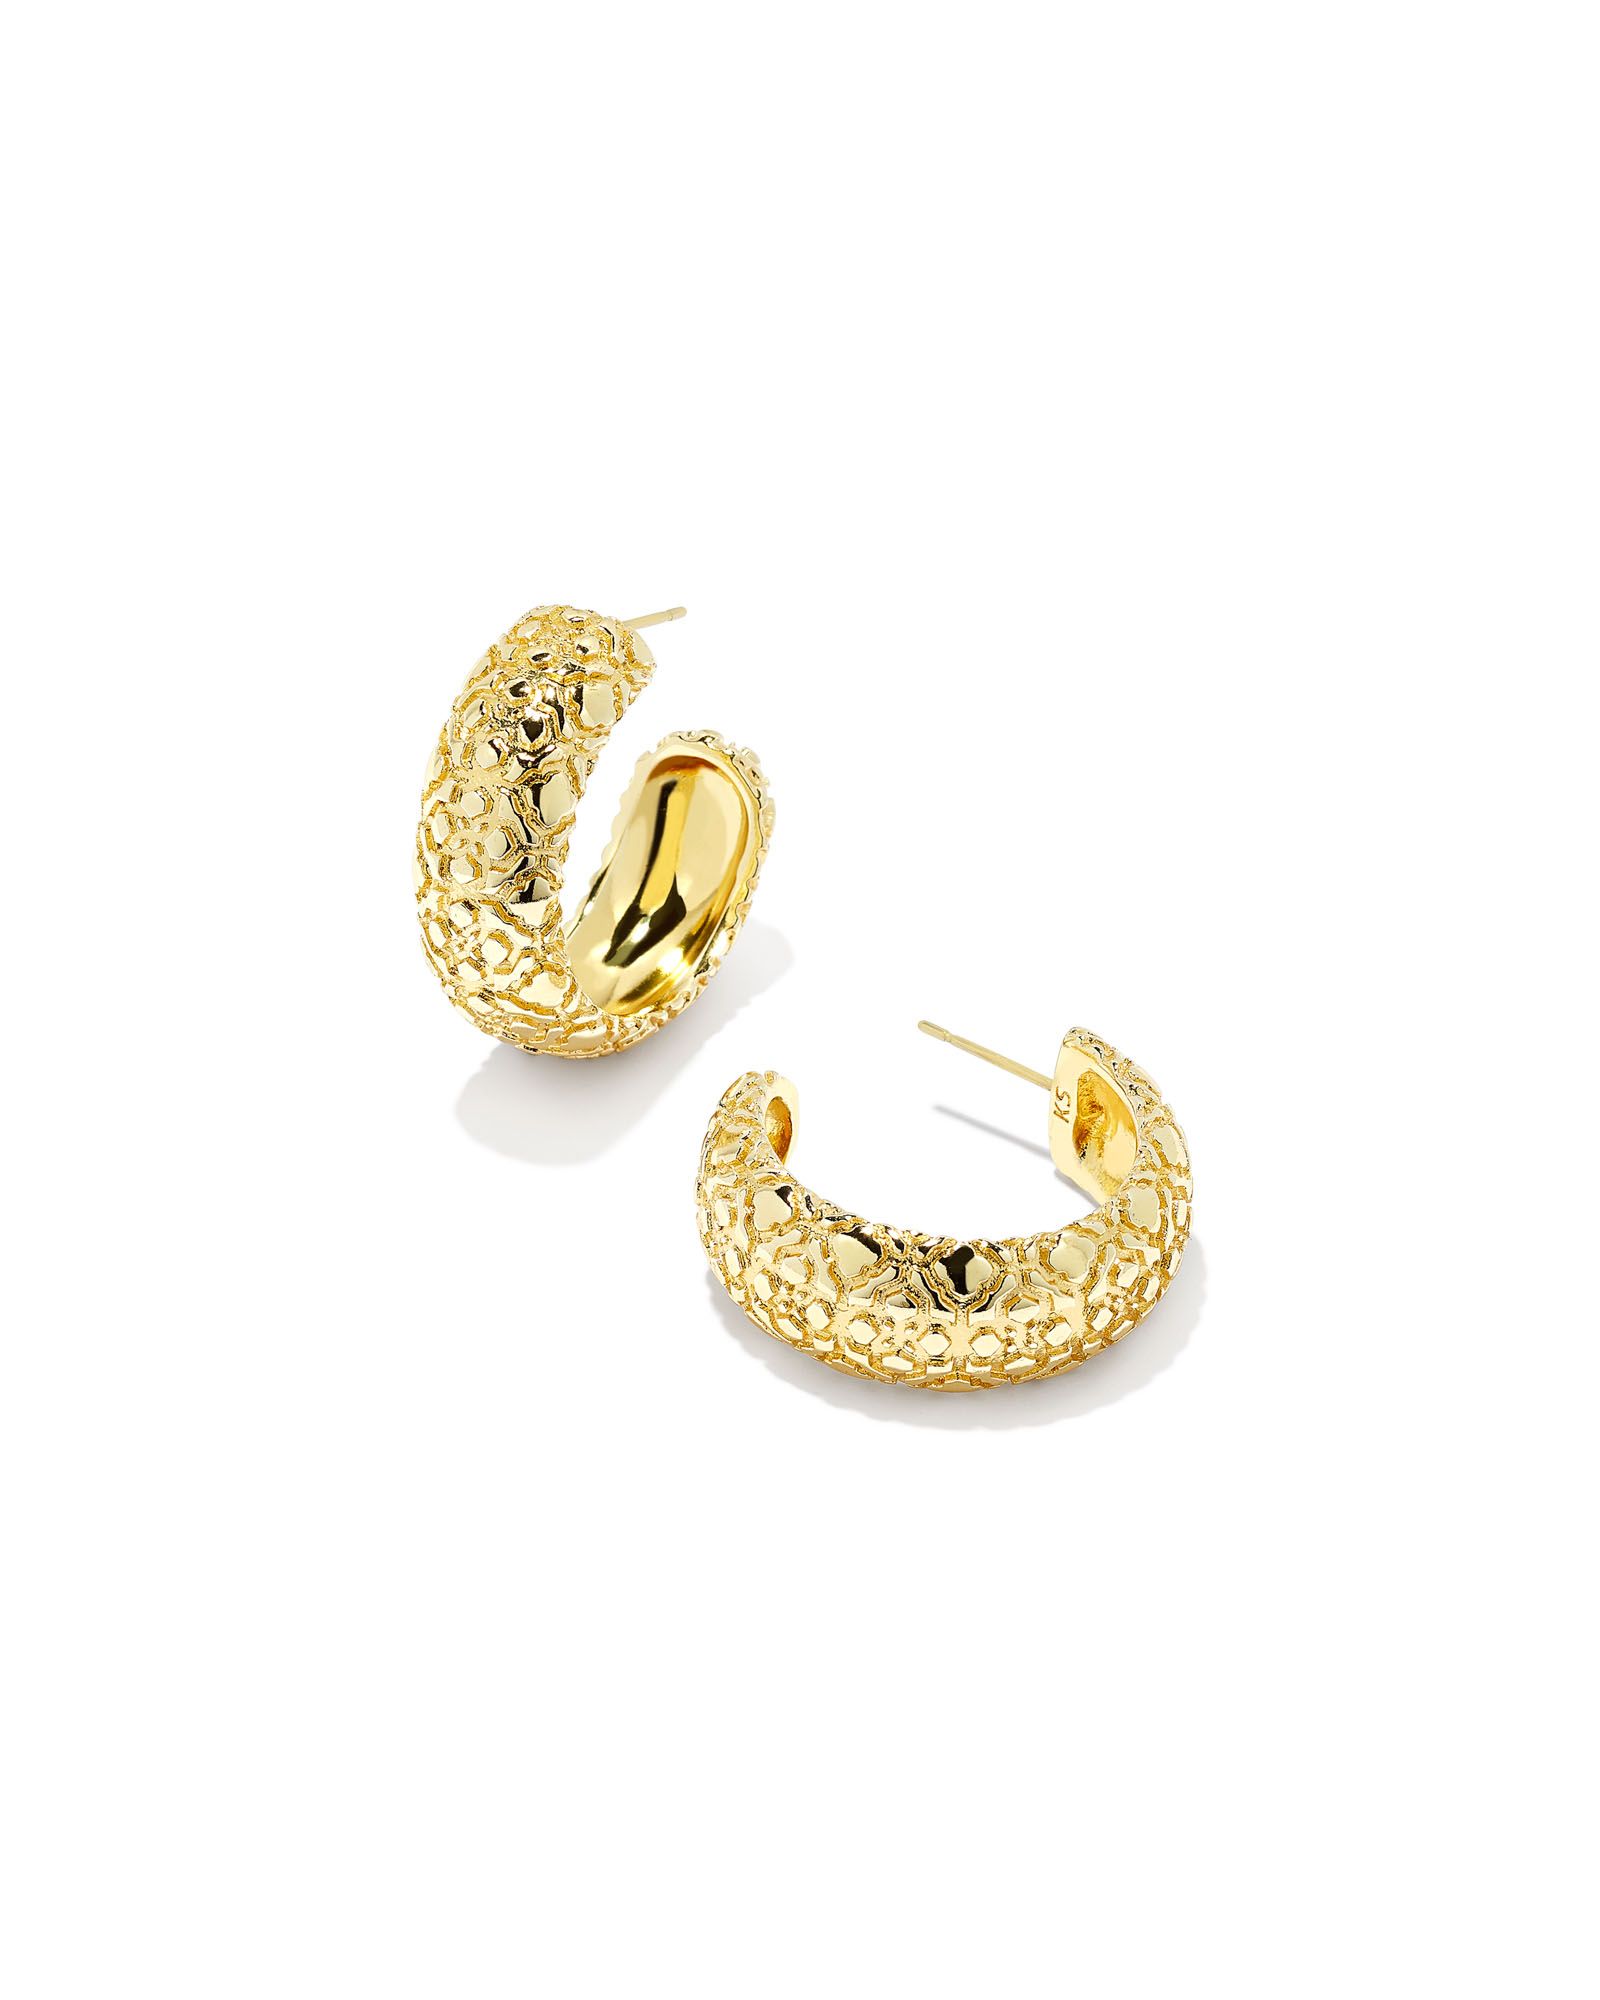 Harper Small Hoop Earrings in Gold | Kendra Scott | Kendra Scott